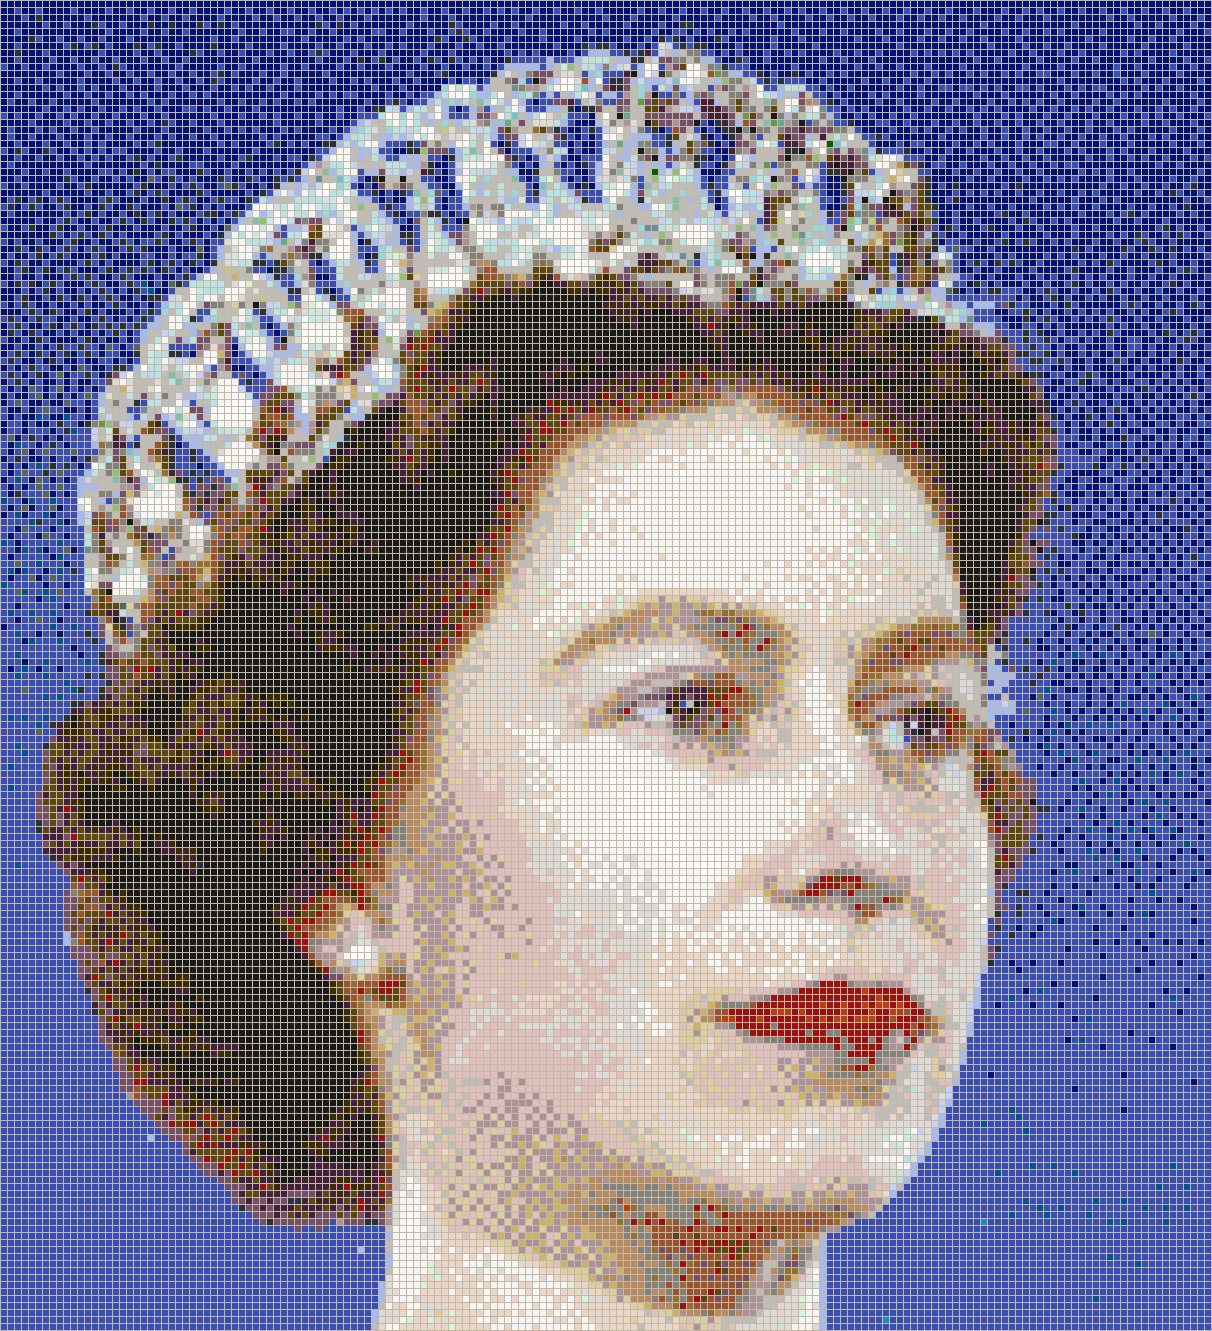 Queen Elizabeth II (1959) - Mosaic Tile Art